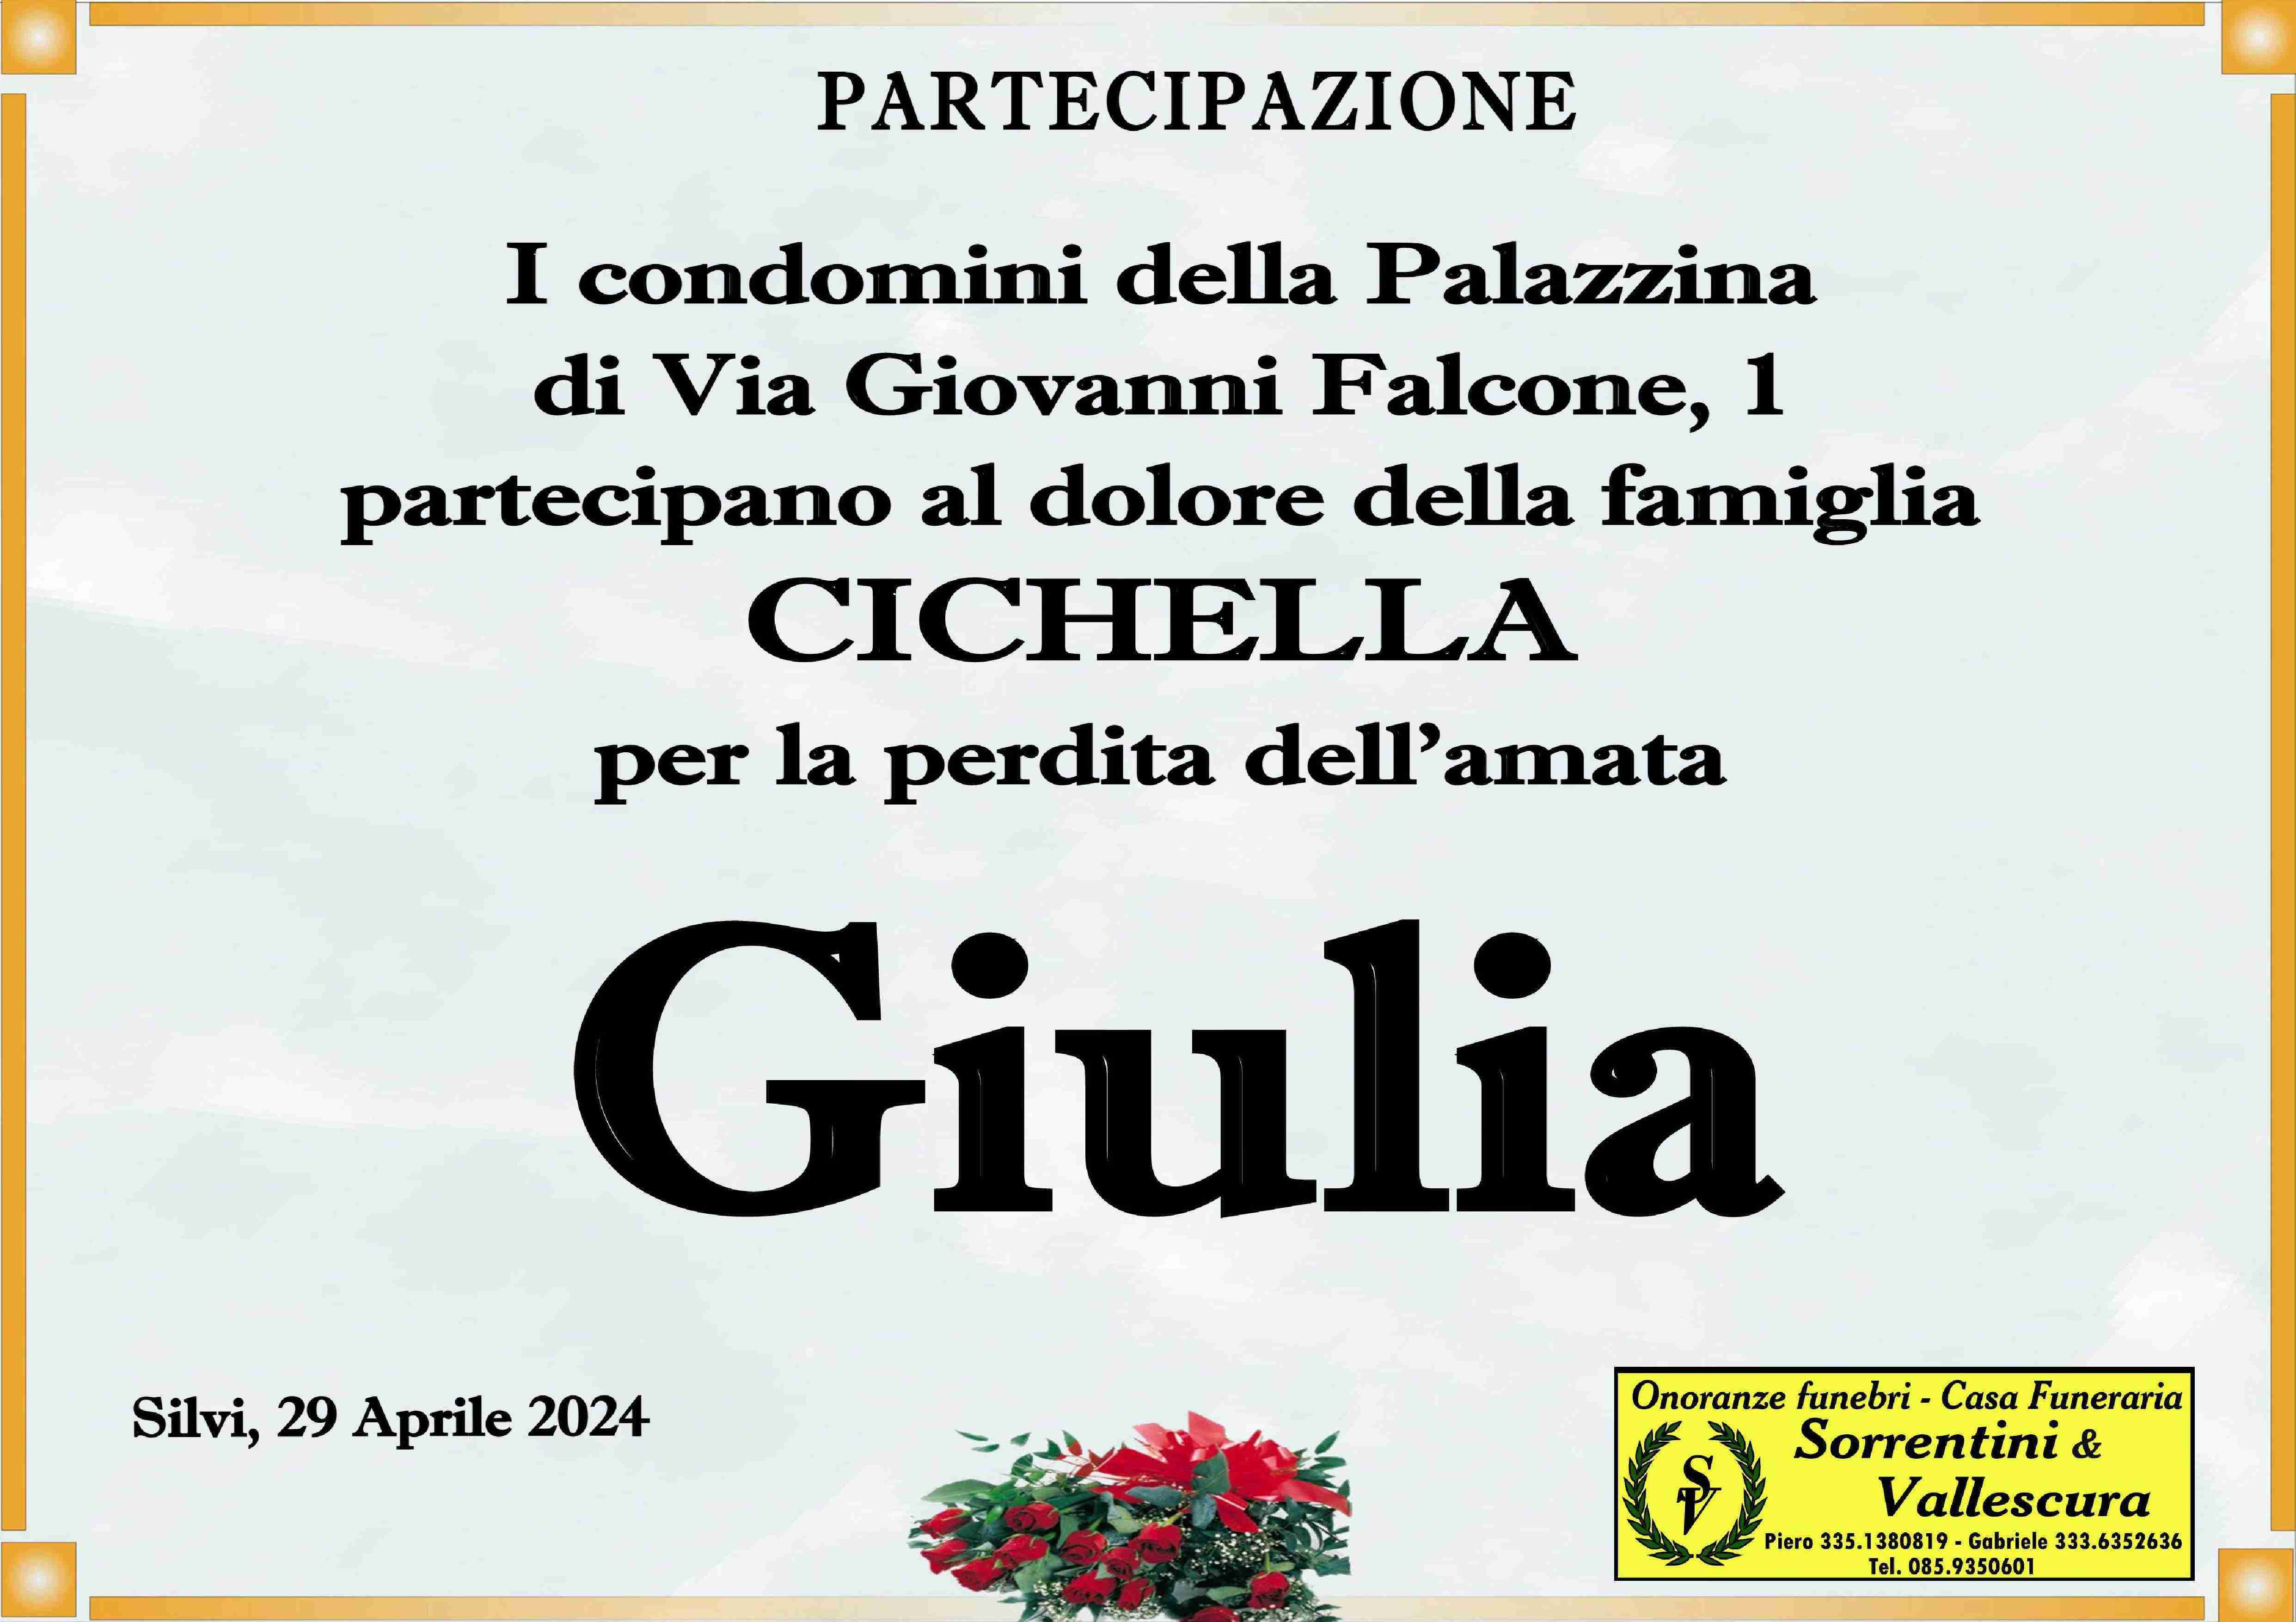 Giulia Cichella